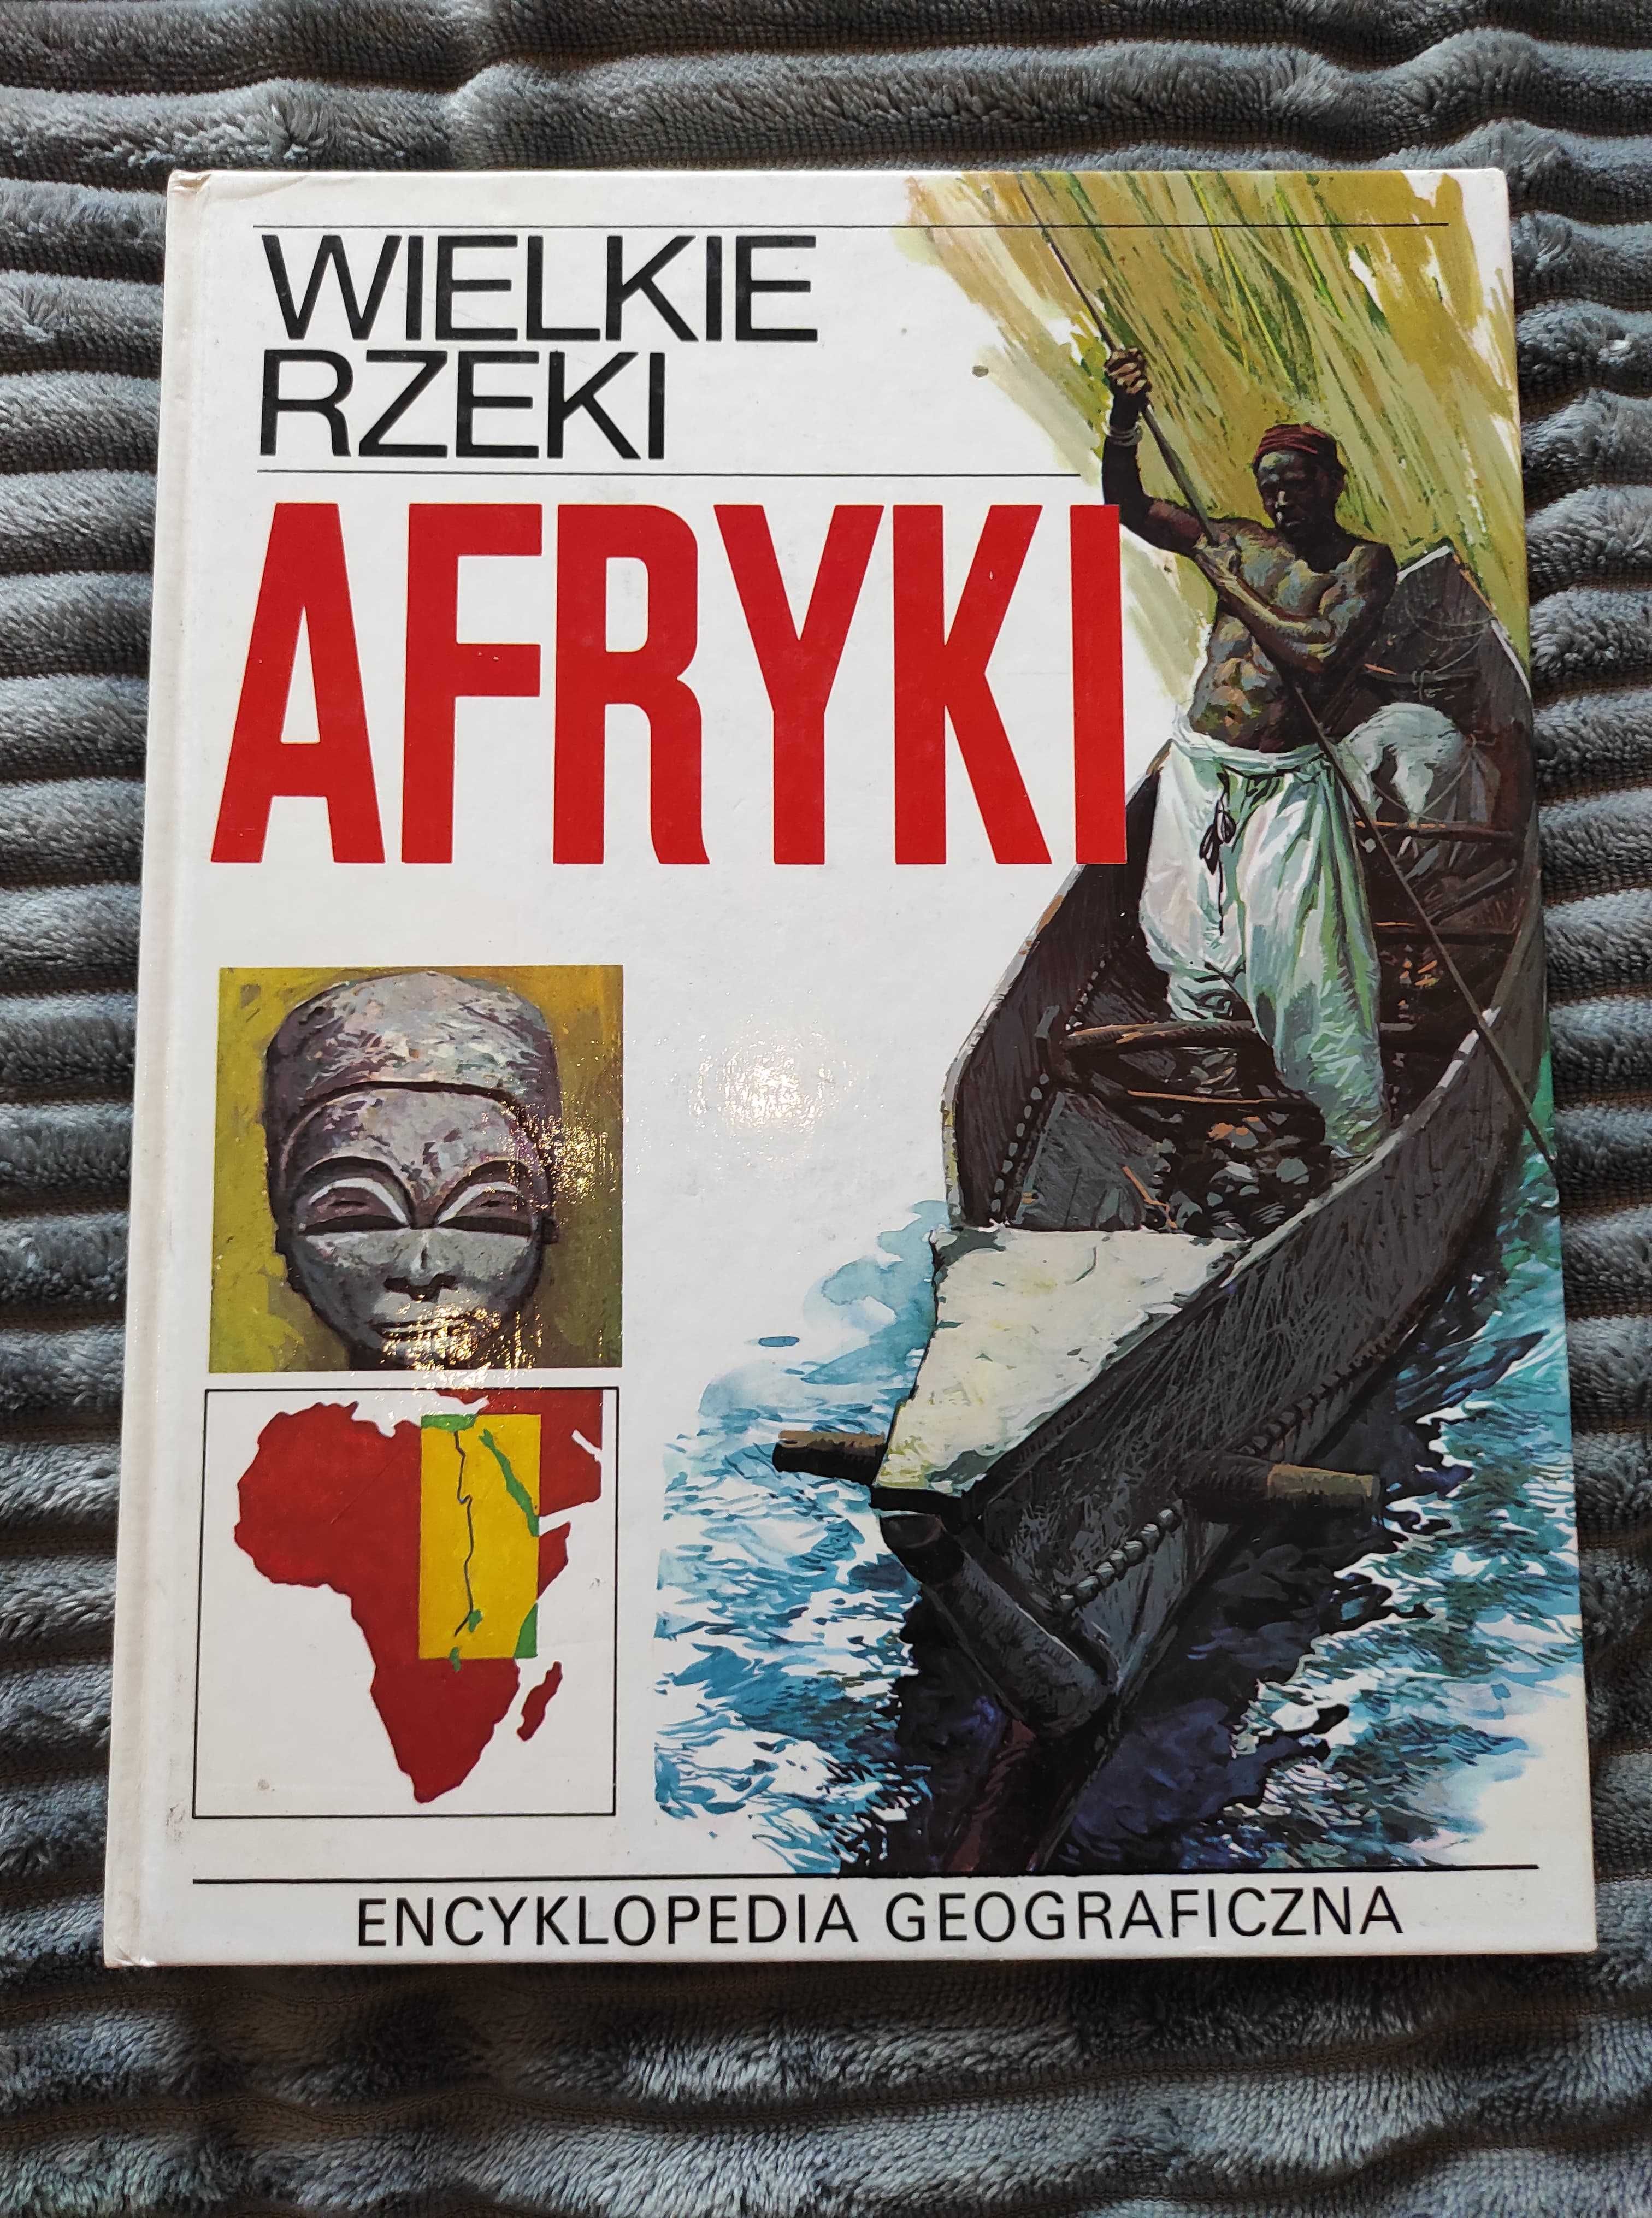 Książka Wielkie rzeki Afryki ilustrowana encyklopedia geograficzna